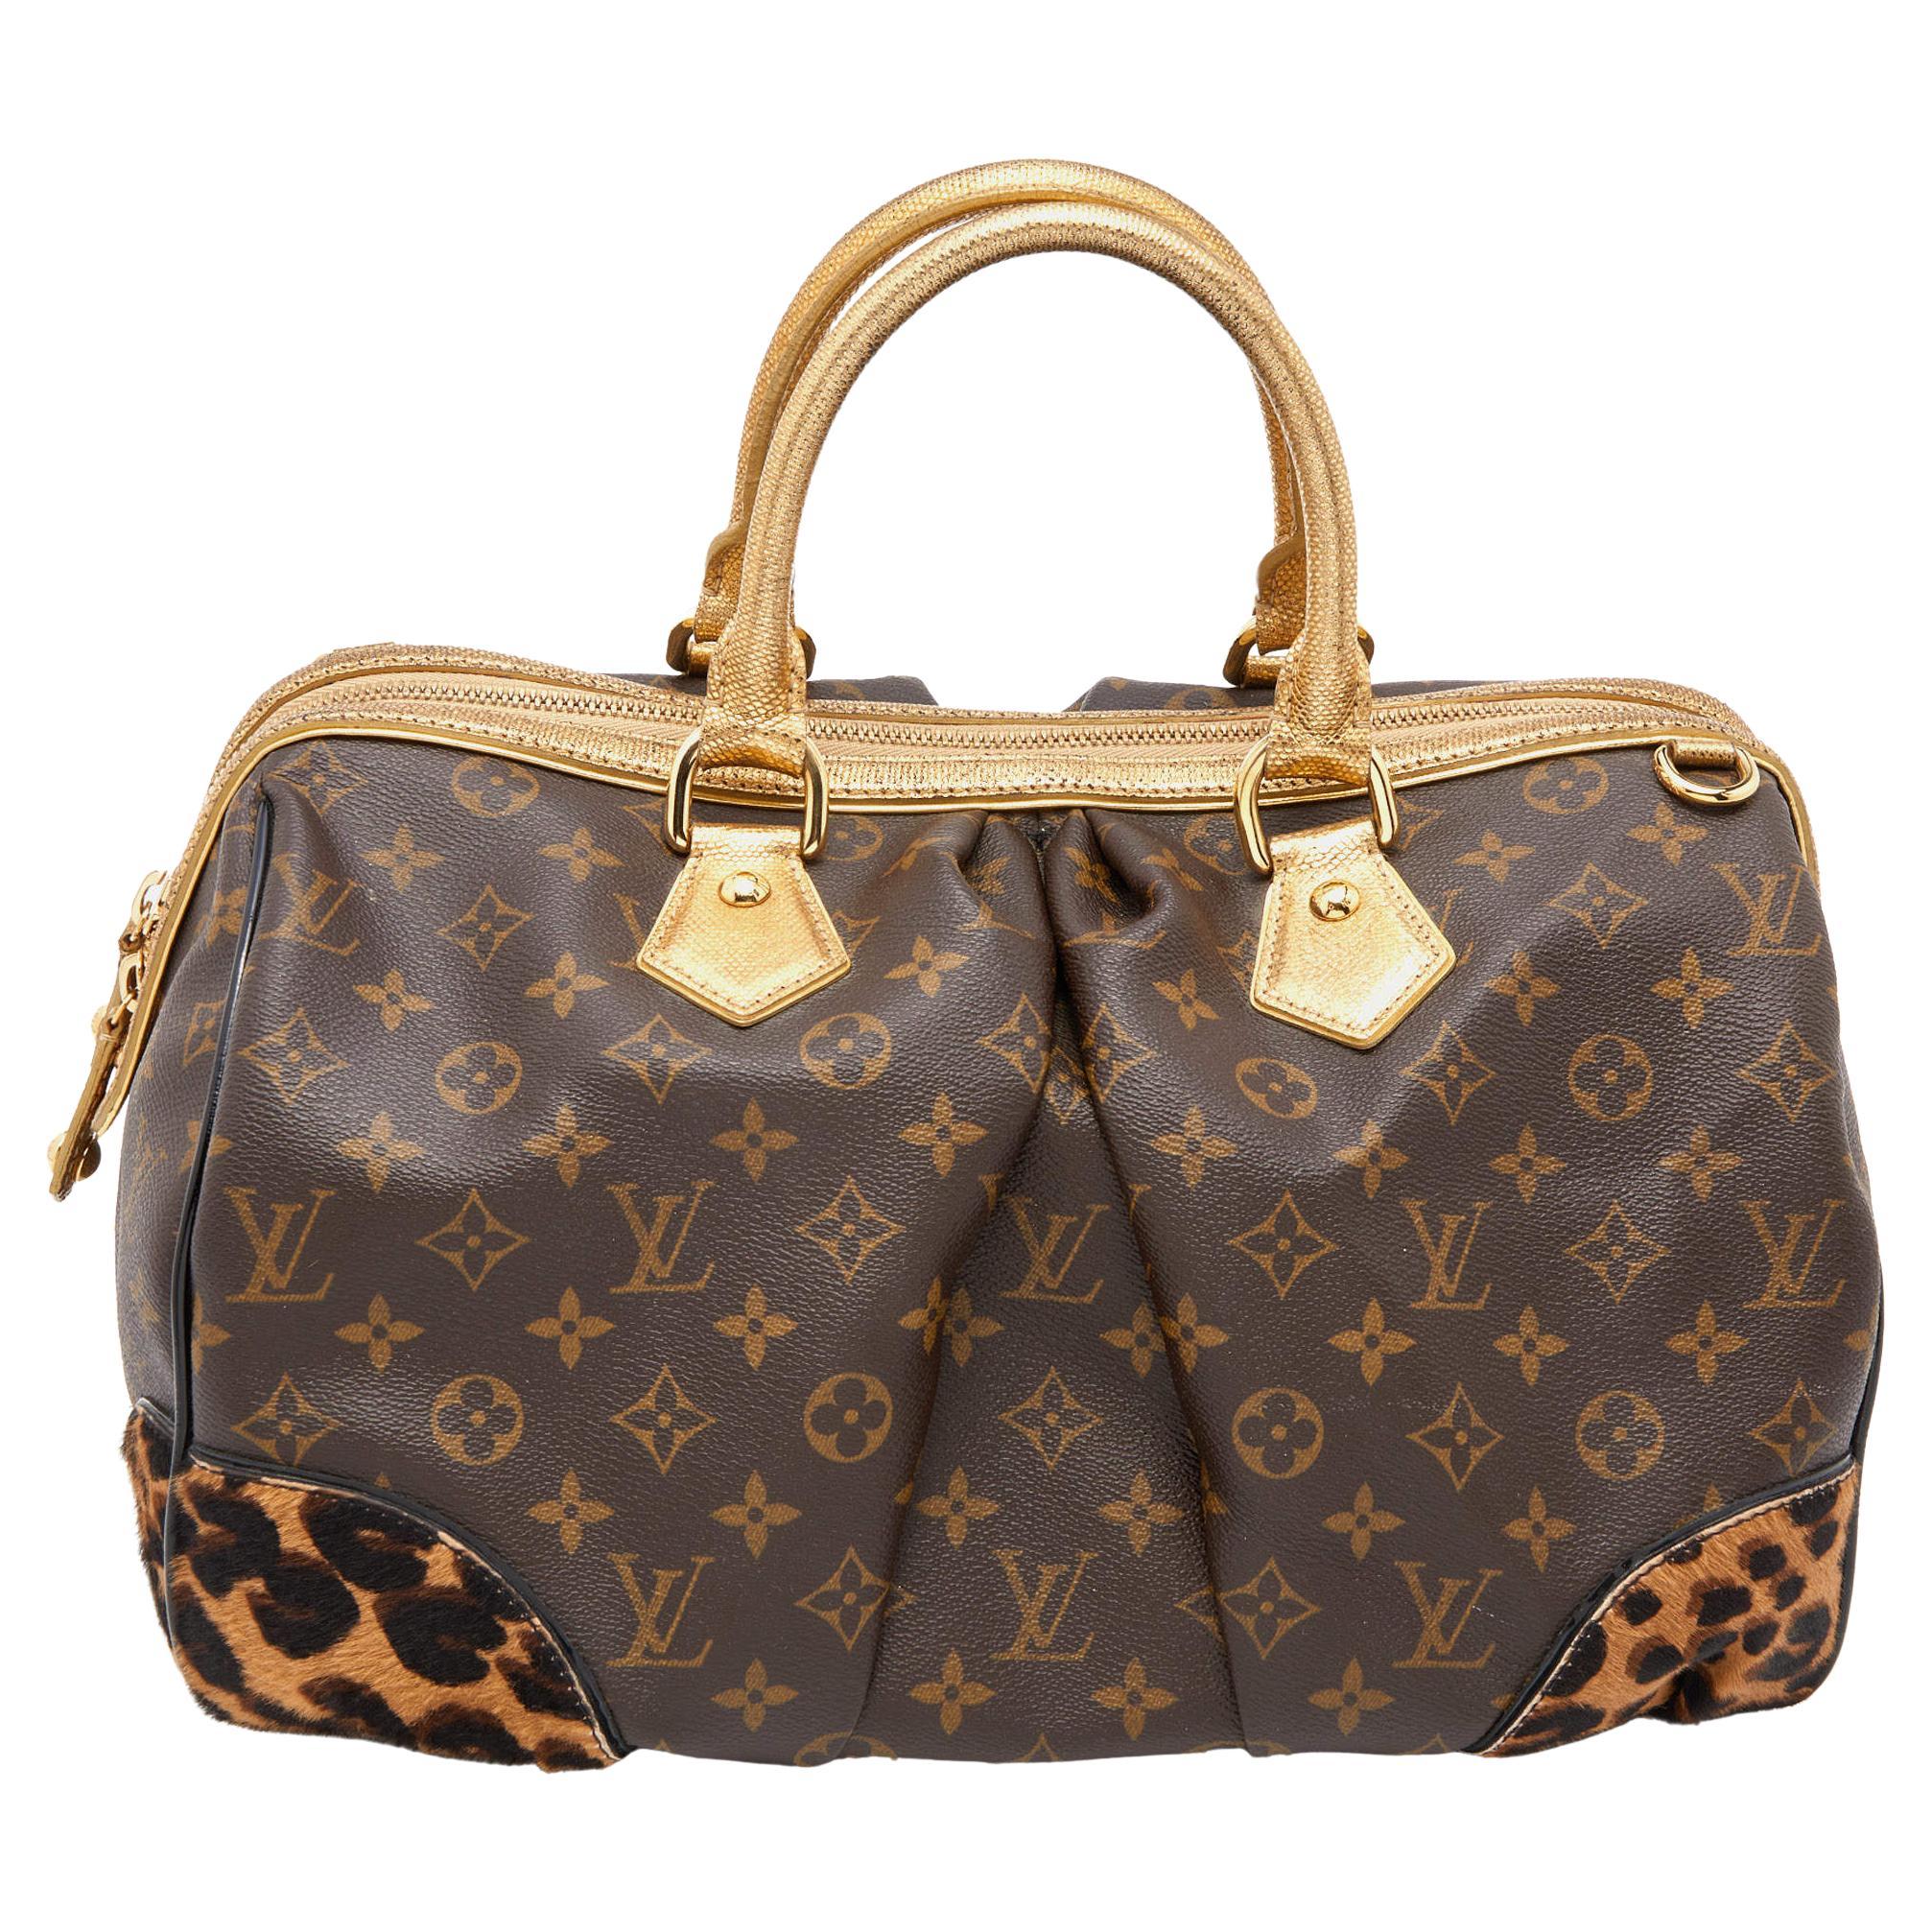 Leopard Print Louis Vuitton Purse -4 For Sale on 1stDibs  louis vuitton  leopard print bag, louis vuitton cheetah print purse, leopard print lv bag